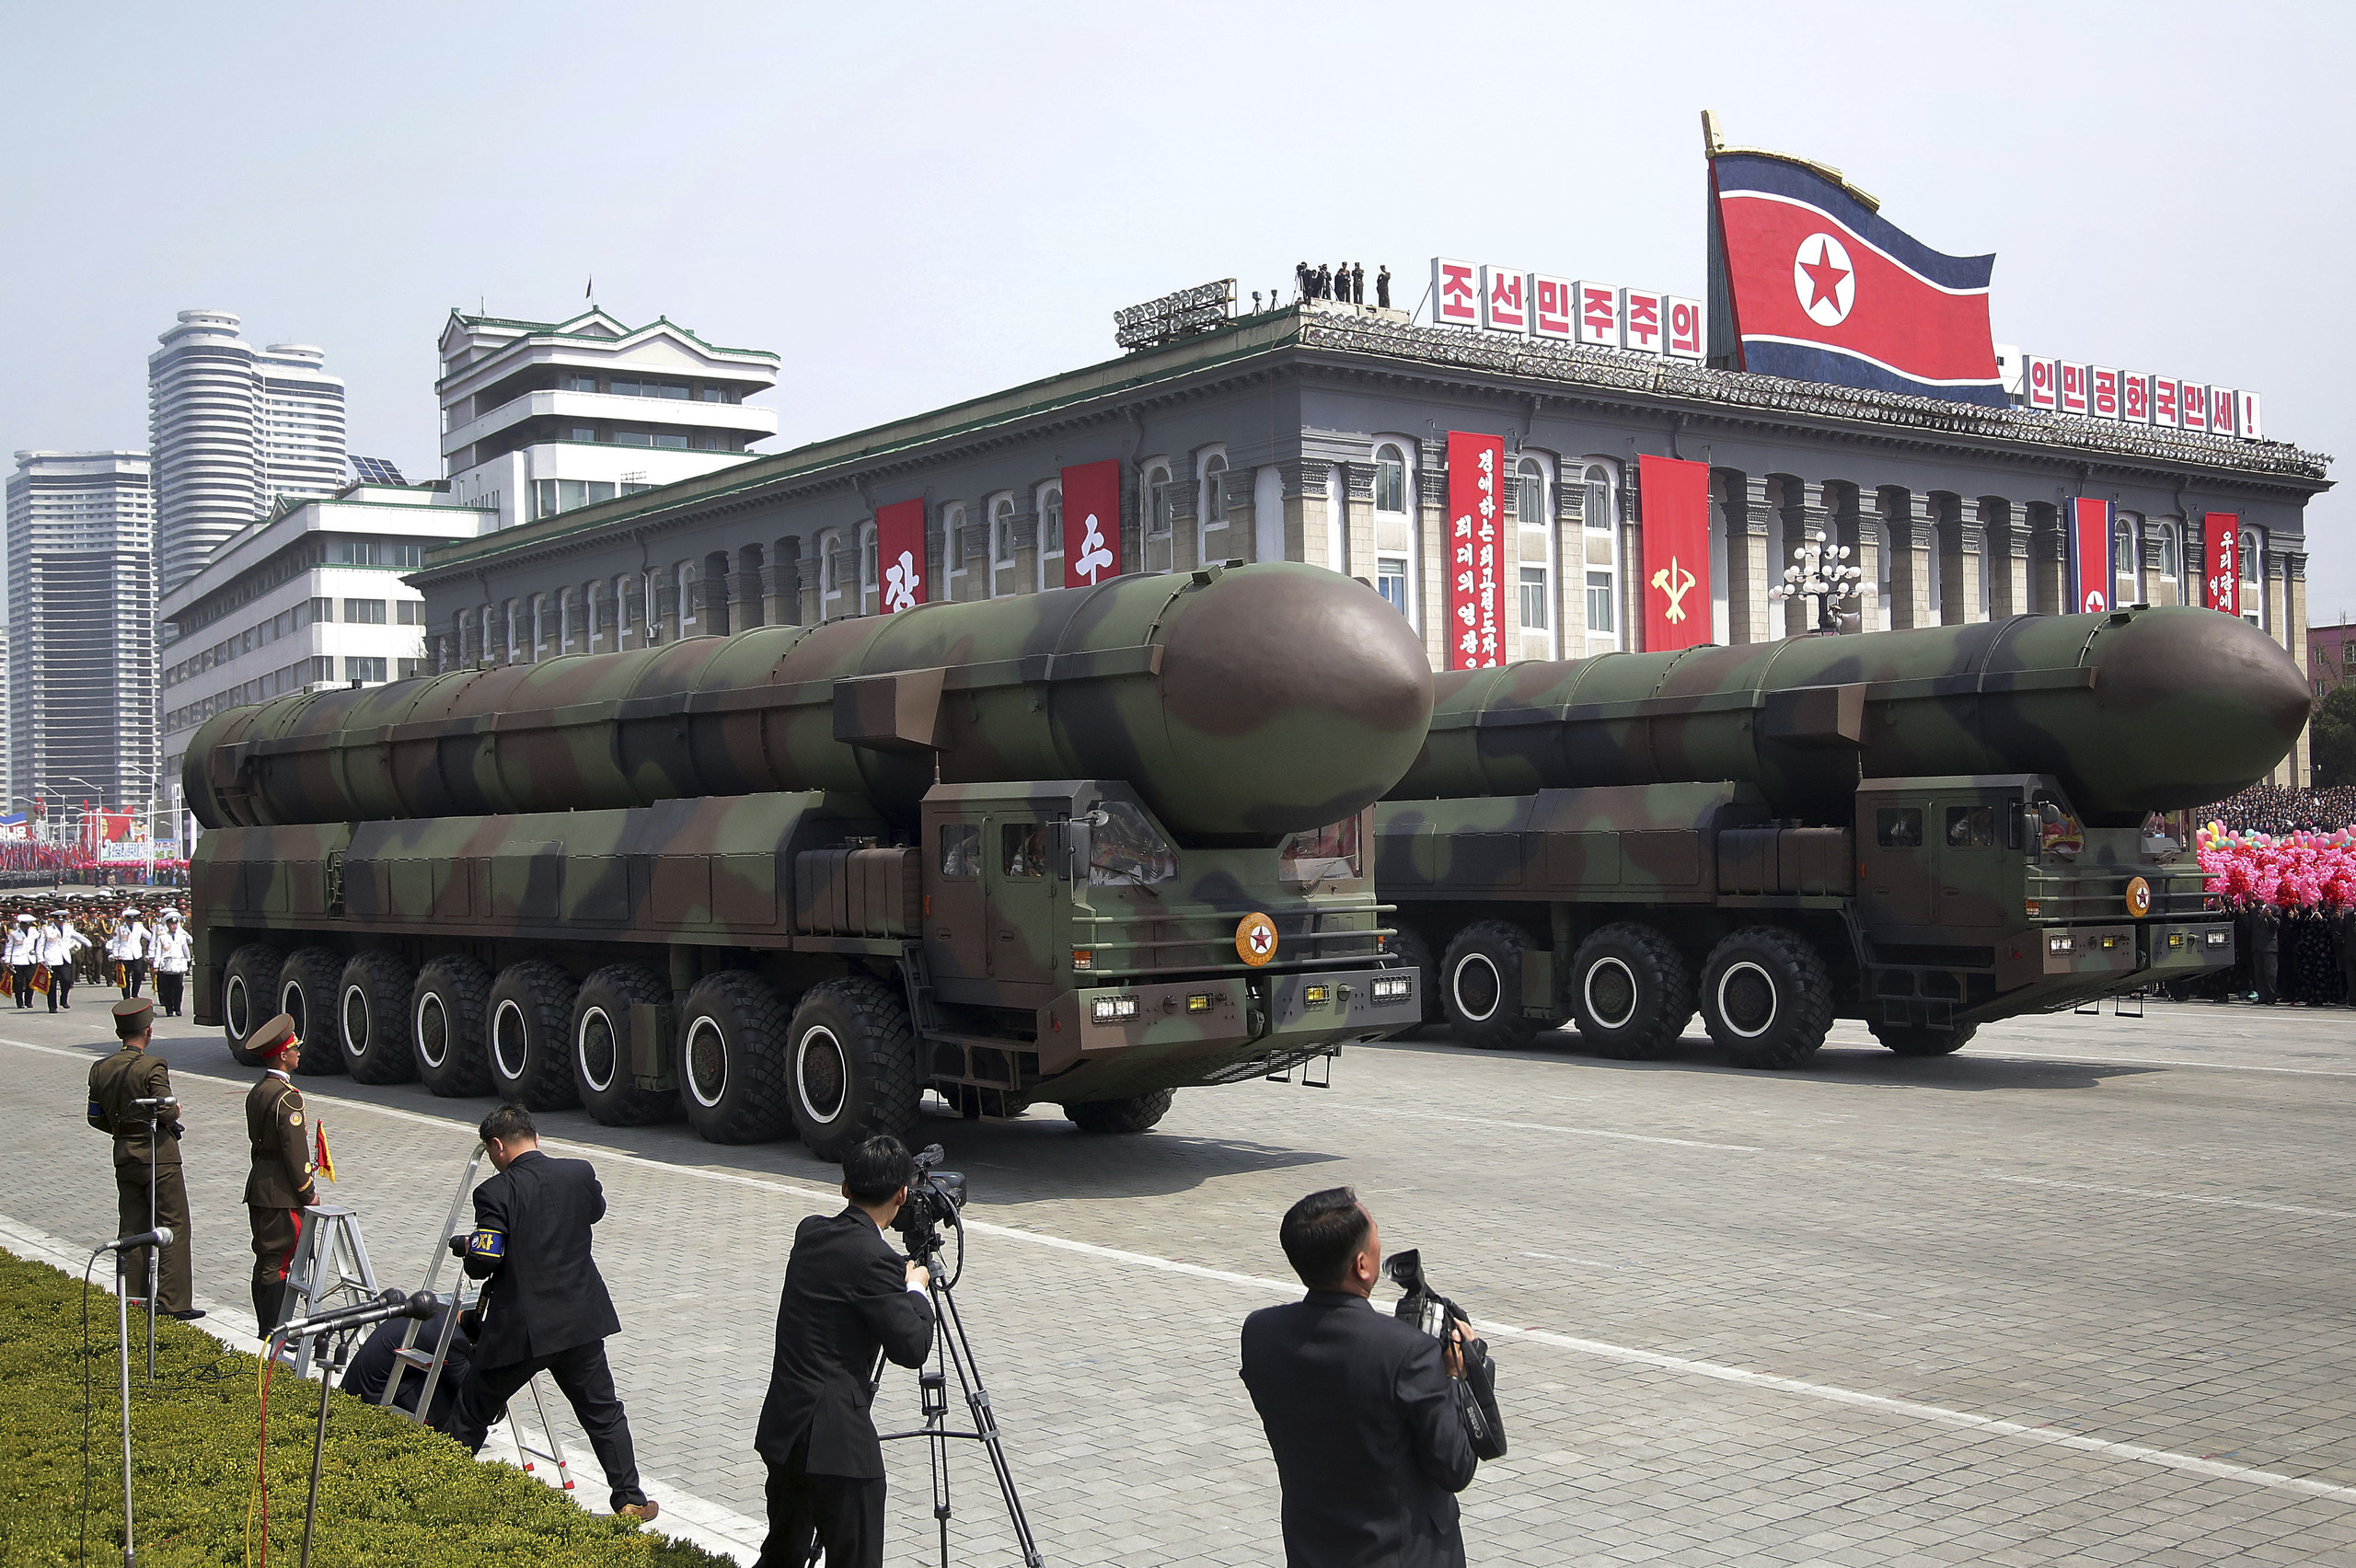 صاروخ كوريا الشمالية